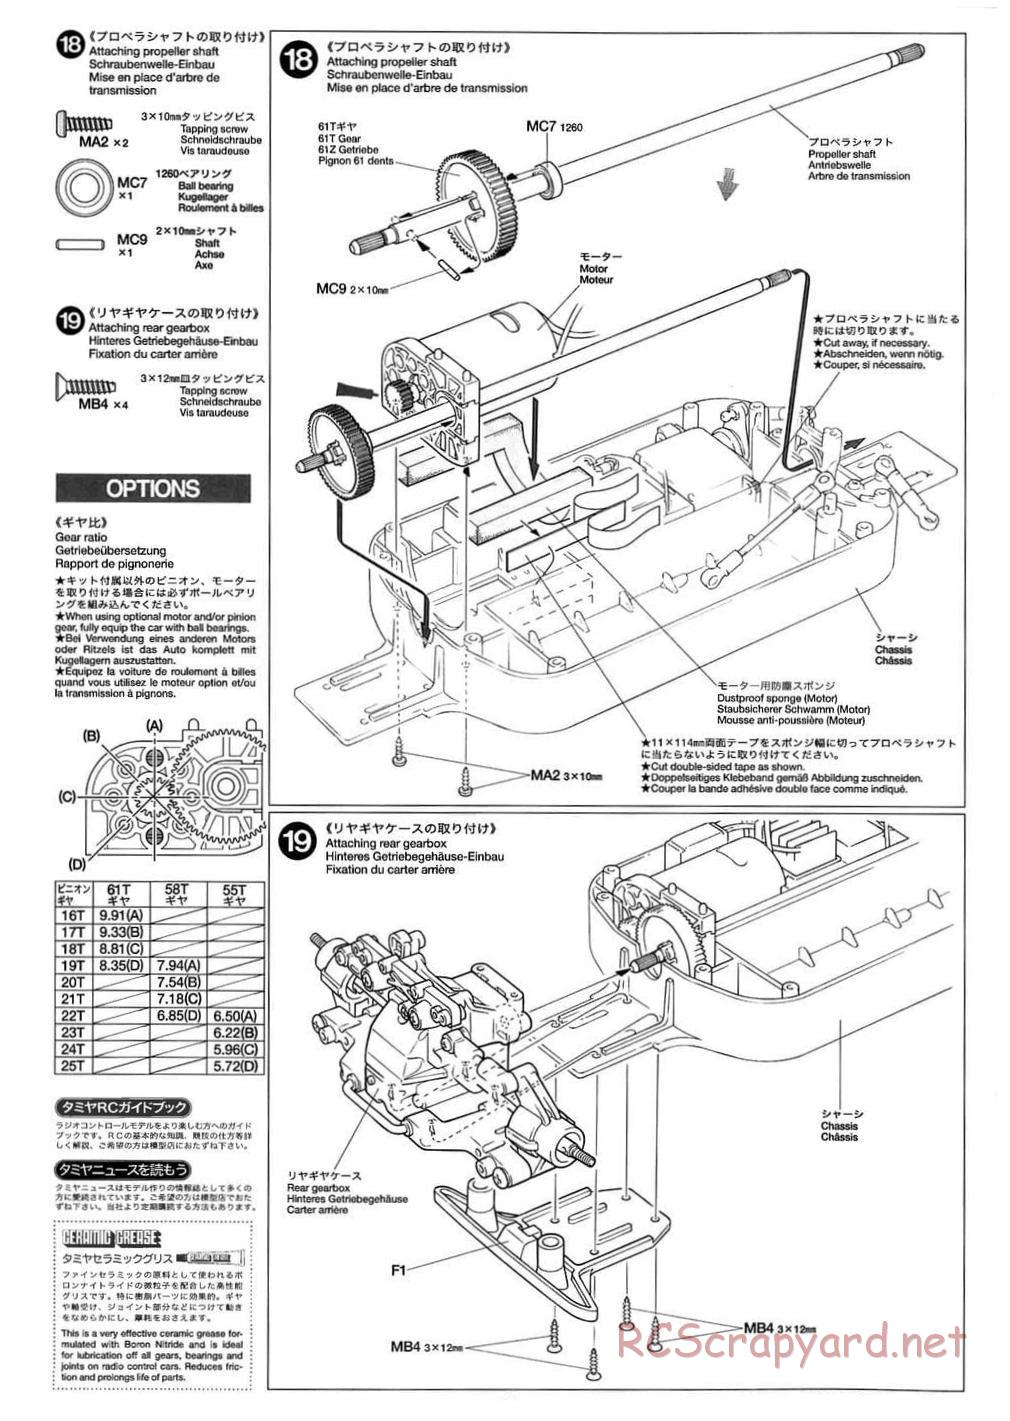 Tamiya - TB-01 Chassis - Manual - Page 10